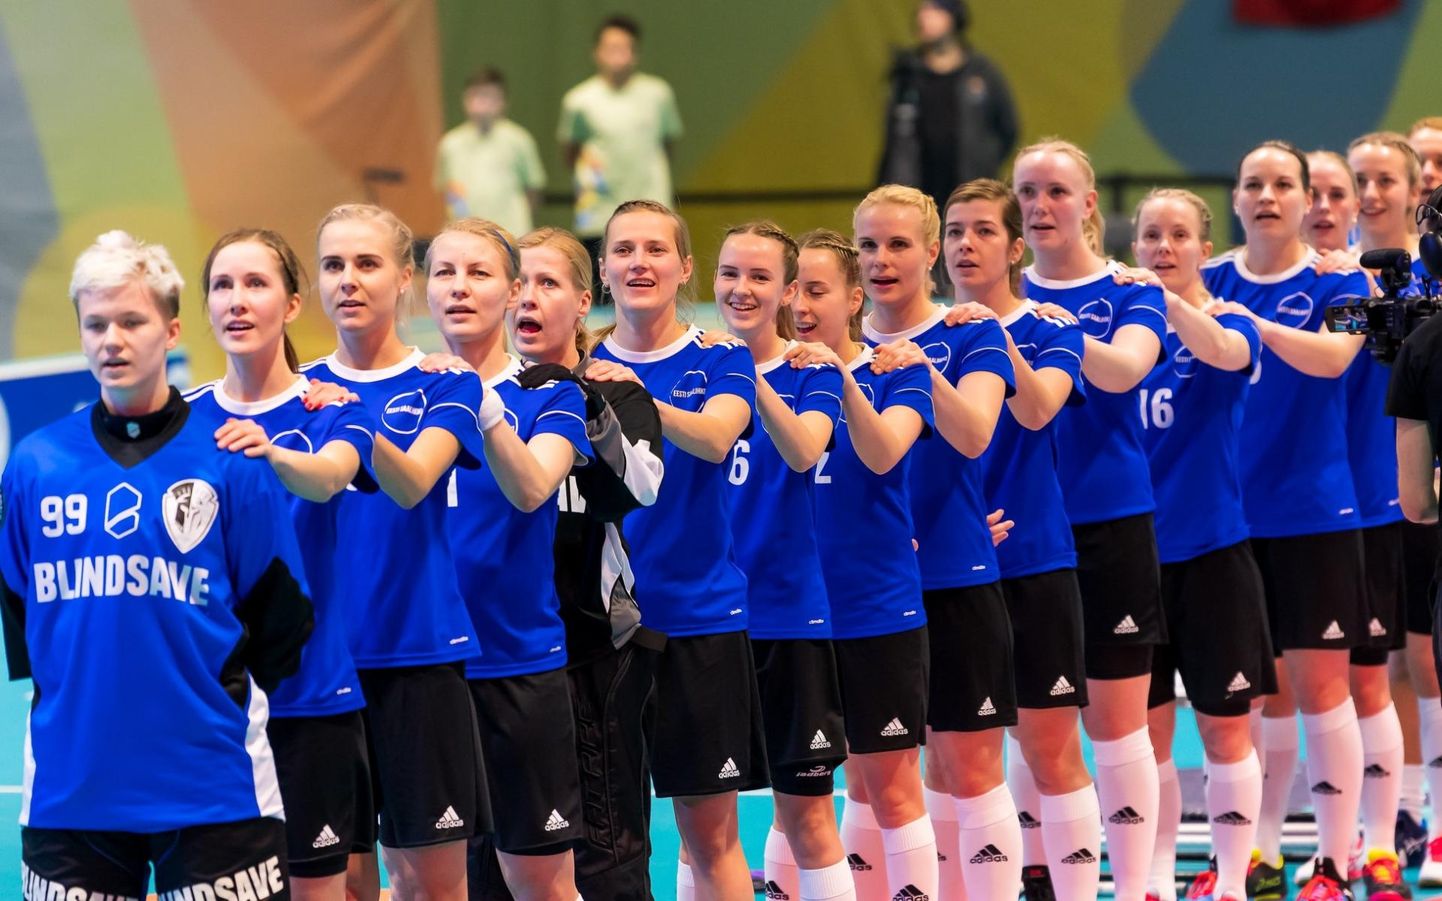 Eesti saalihokikoondis, kus mängivad ka Viljandi juurtega õed Diana Klavan ja Jane Klavan, tuli Šveitsis maailmameistrivõistlustel 14. kohale.